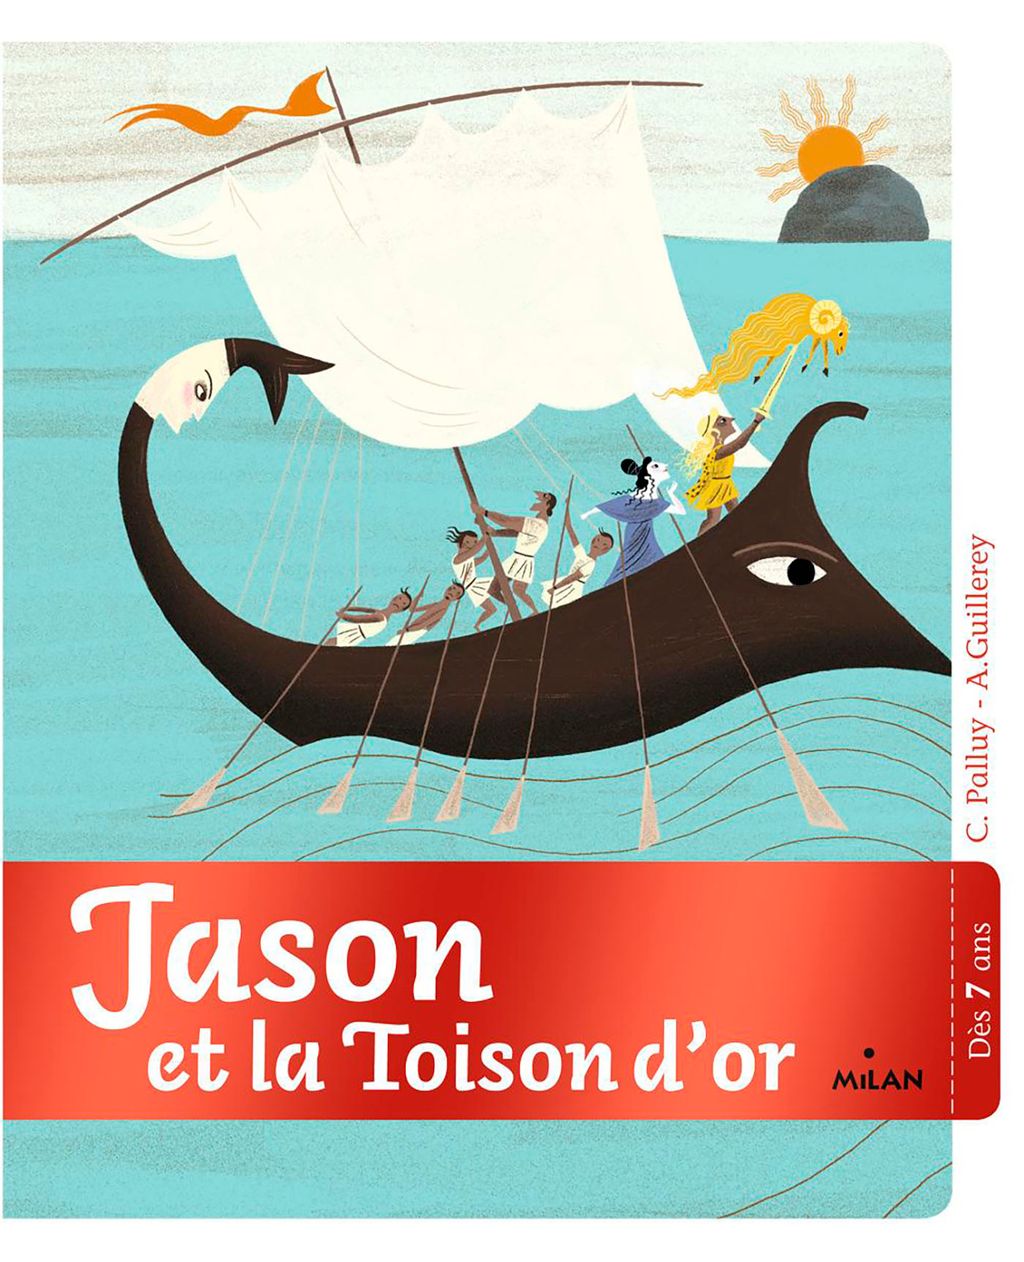 « Jason et la toison d’or » cover